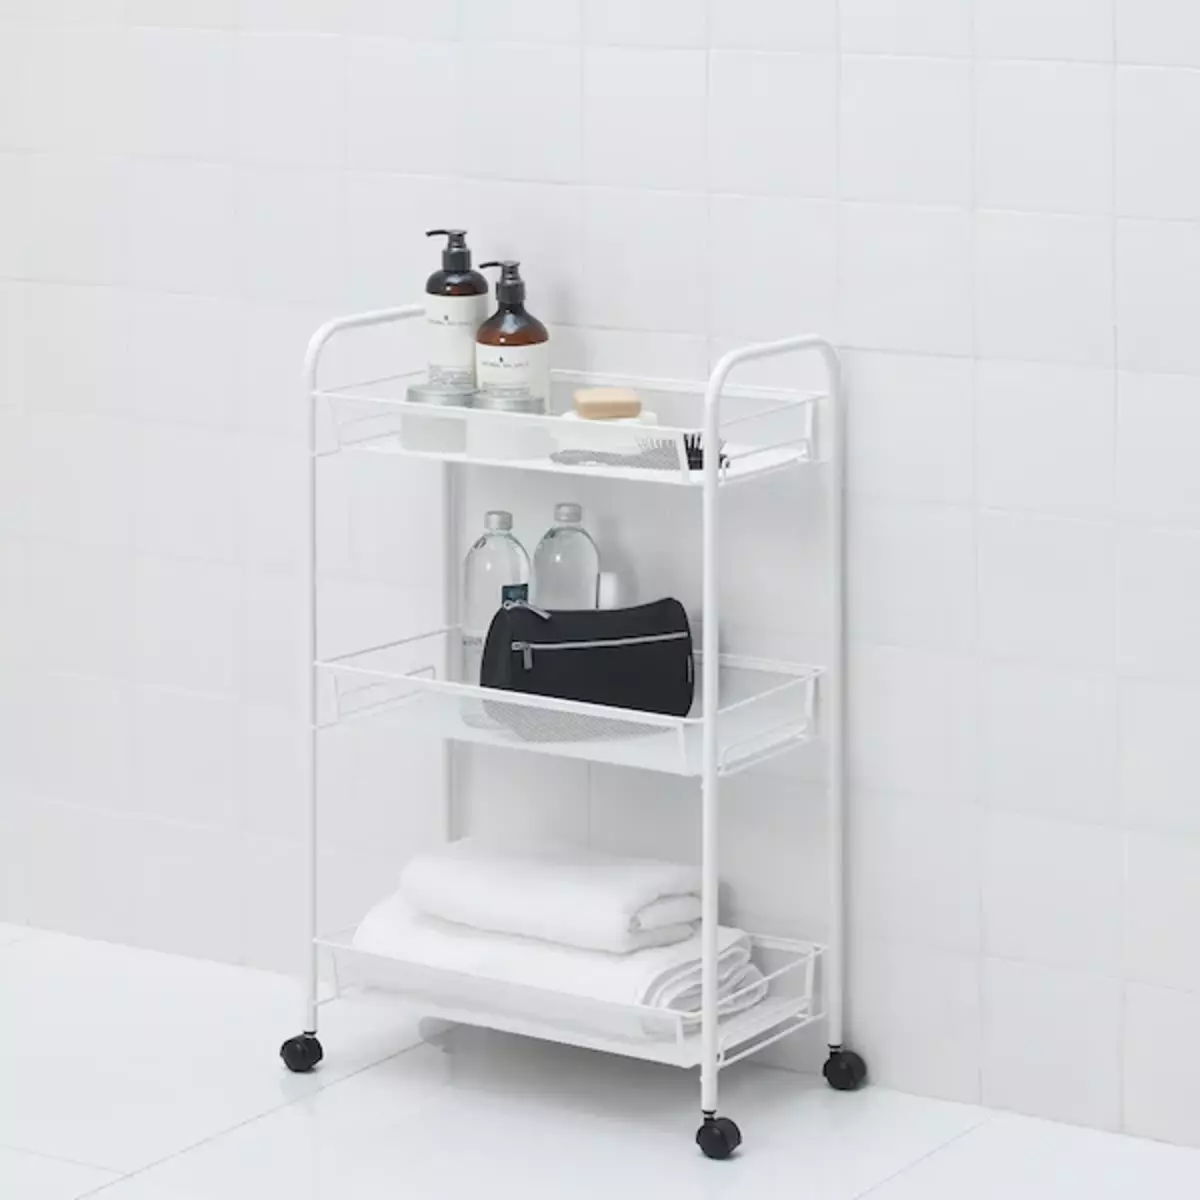 IKEA'dan Rahatlamak için bir banyo yapmak isteyenler için 11 faydalı ürünler 7050_84